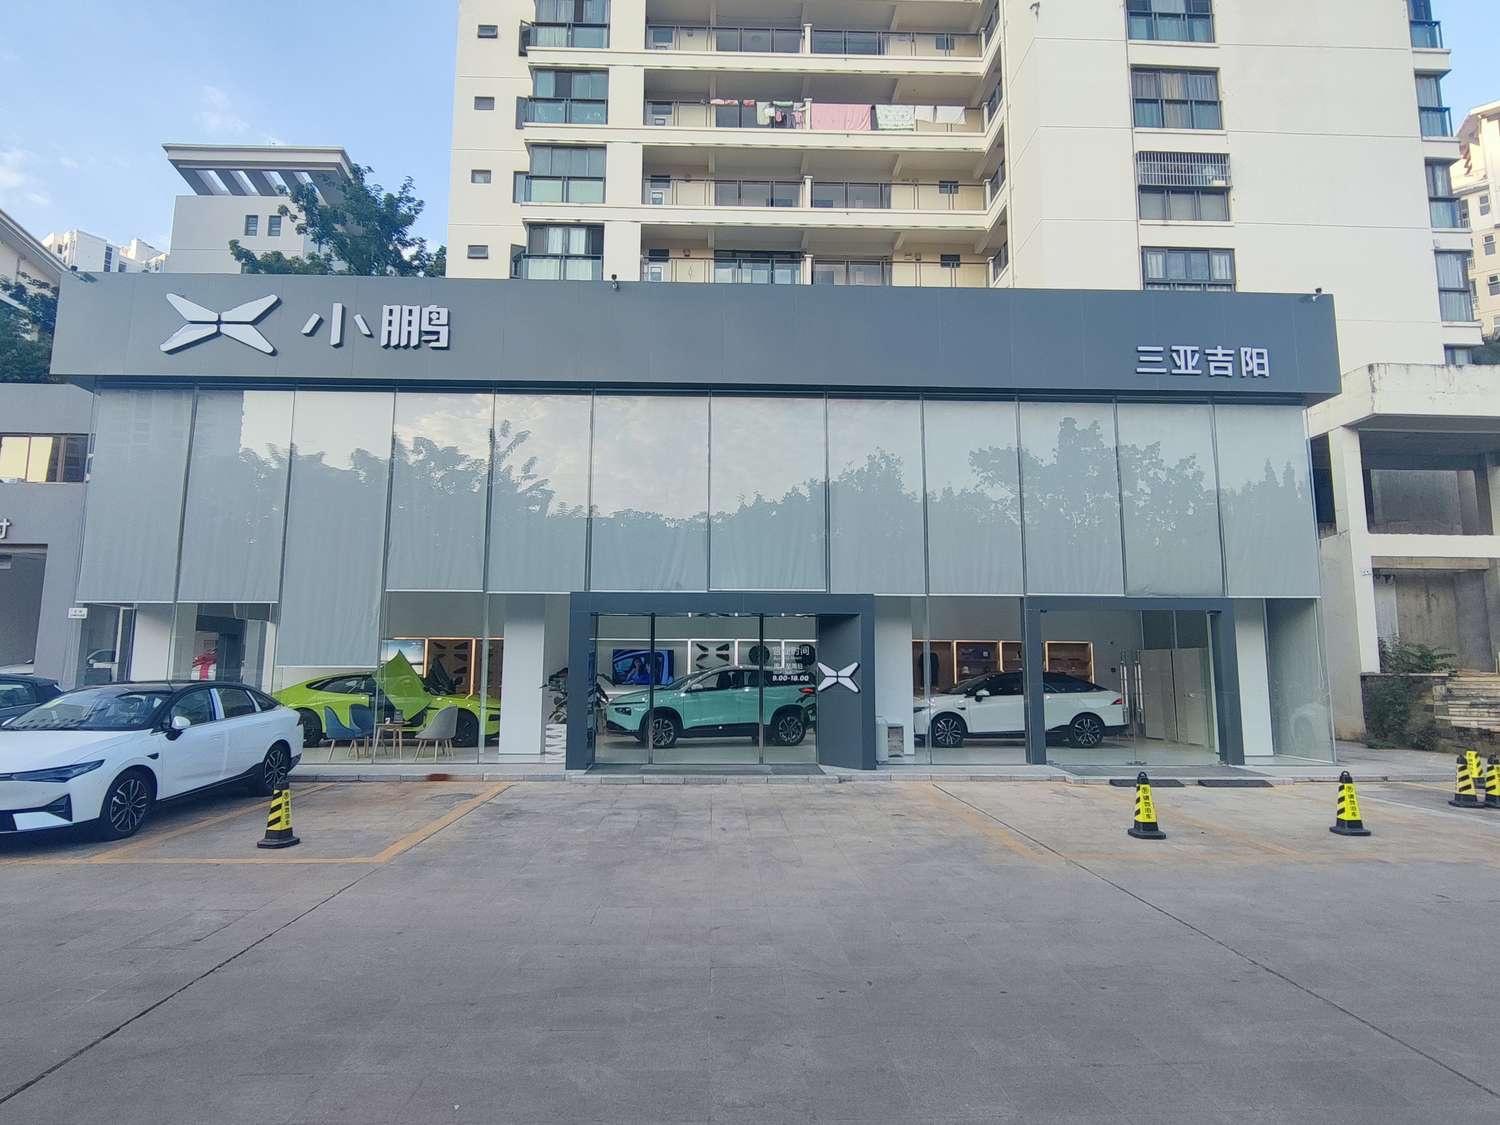 小鹏三亚吉阳销售服务中心